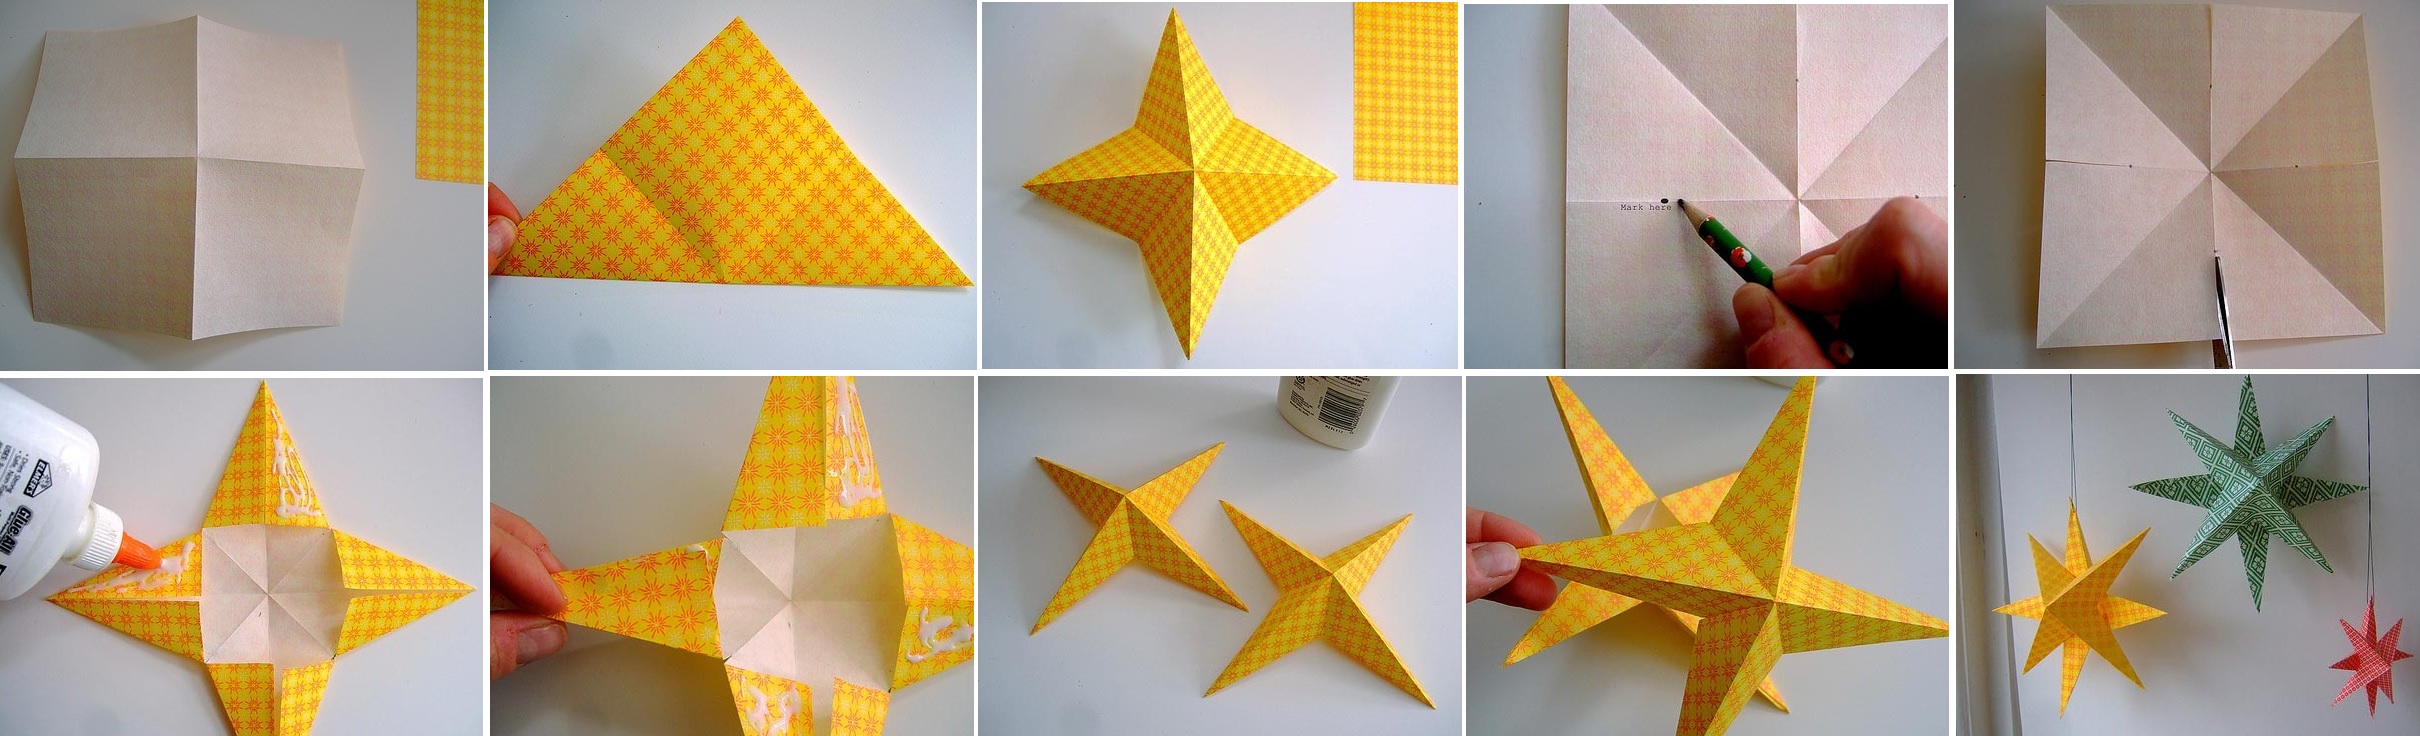 Как сделать красивую объемную звезду из бумаги на елку своими руками: инструкции с пошаговыми фото и видео-примерами